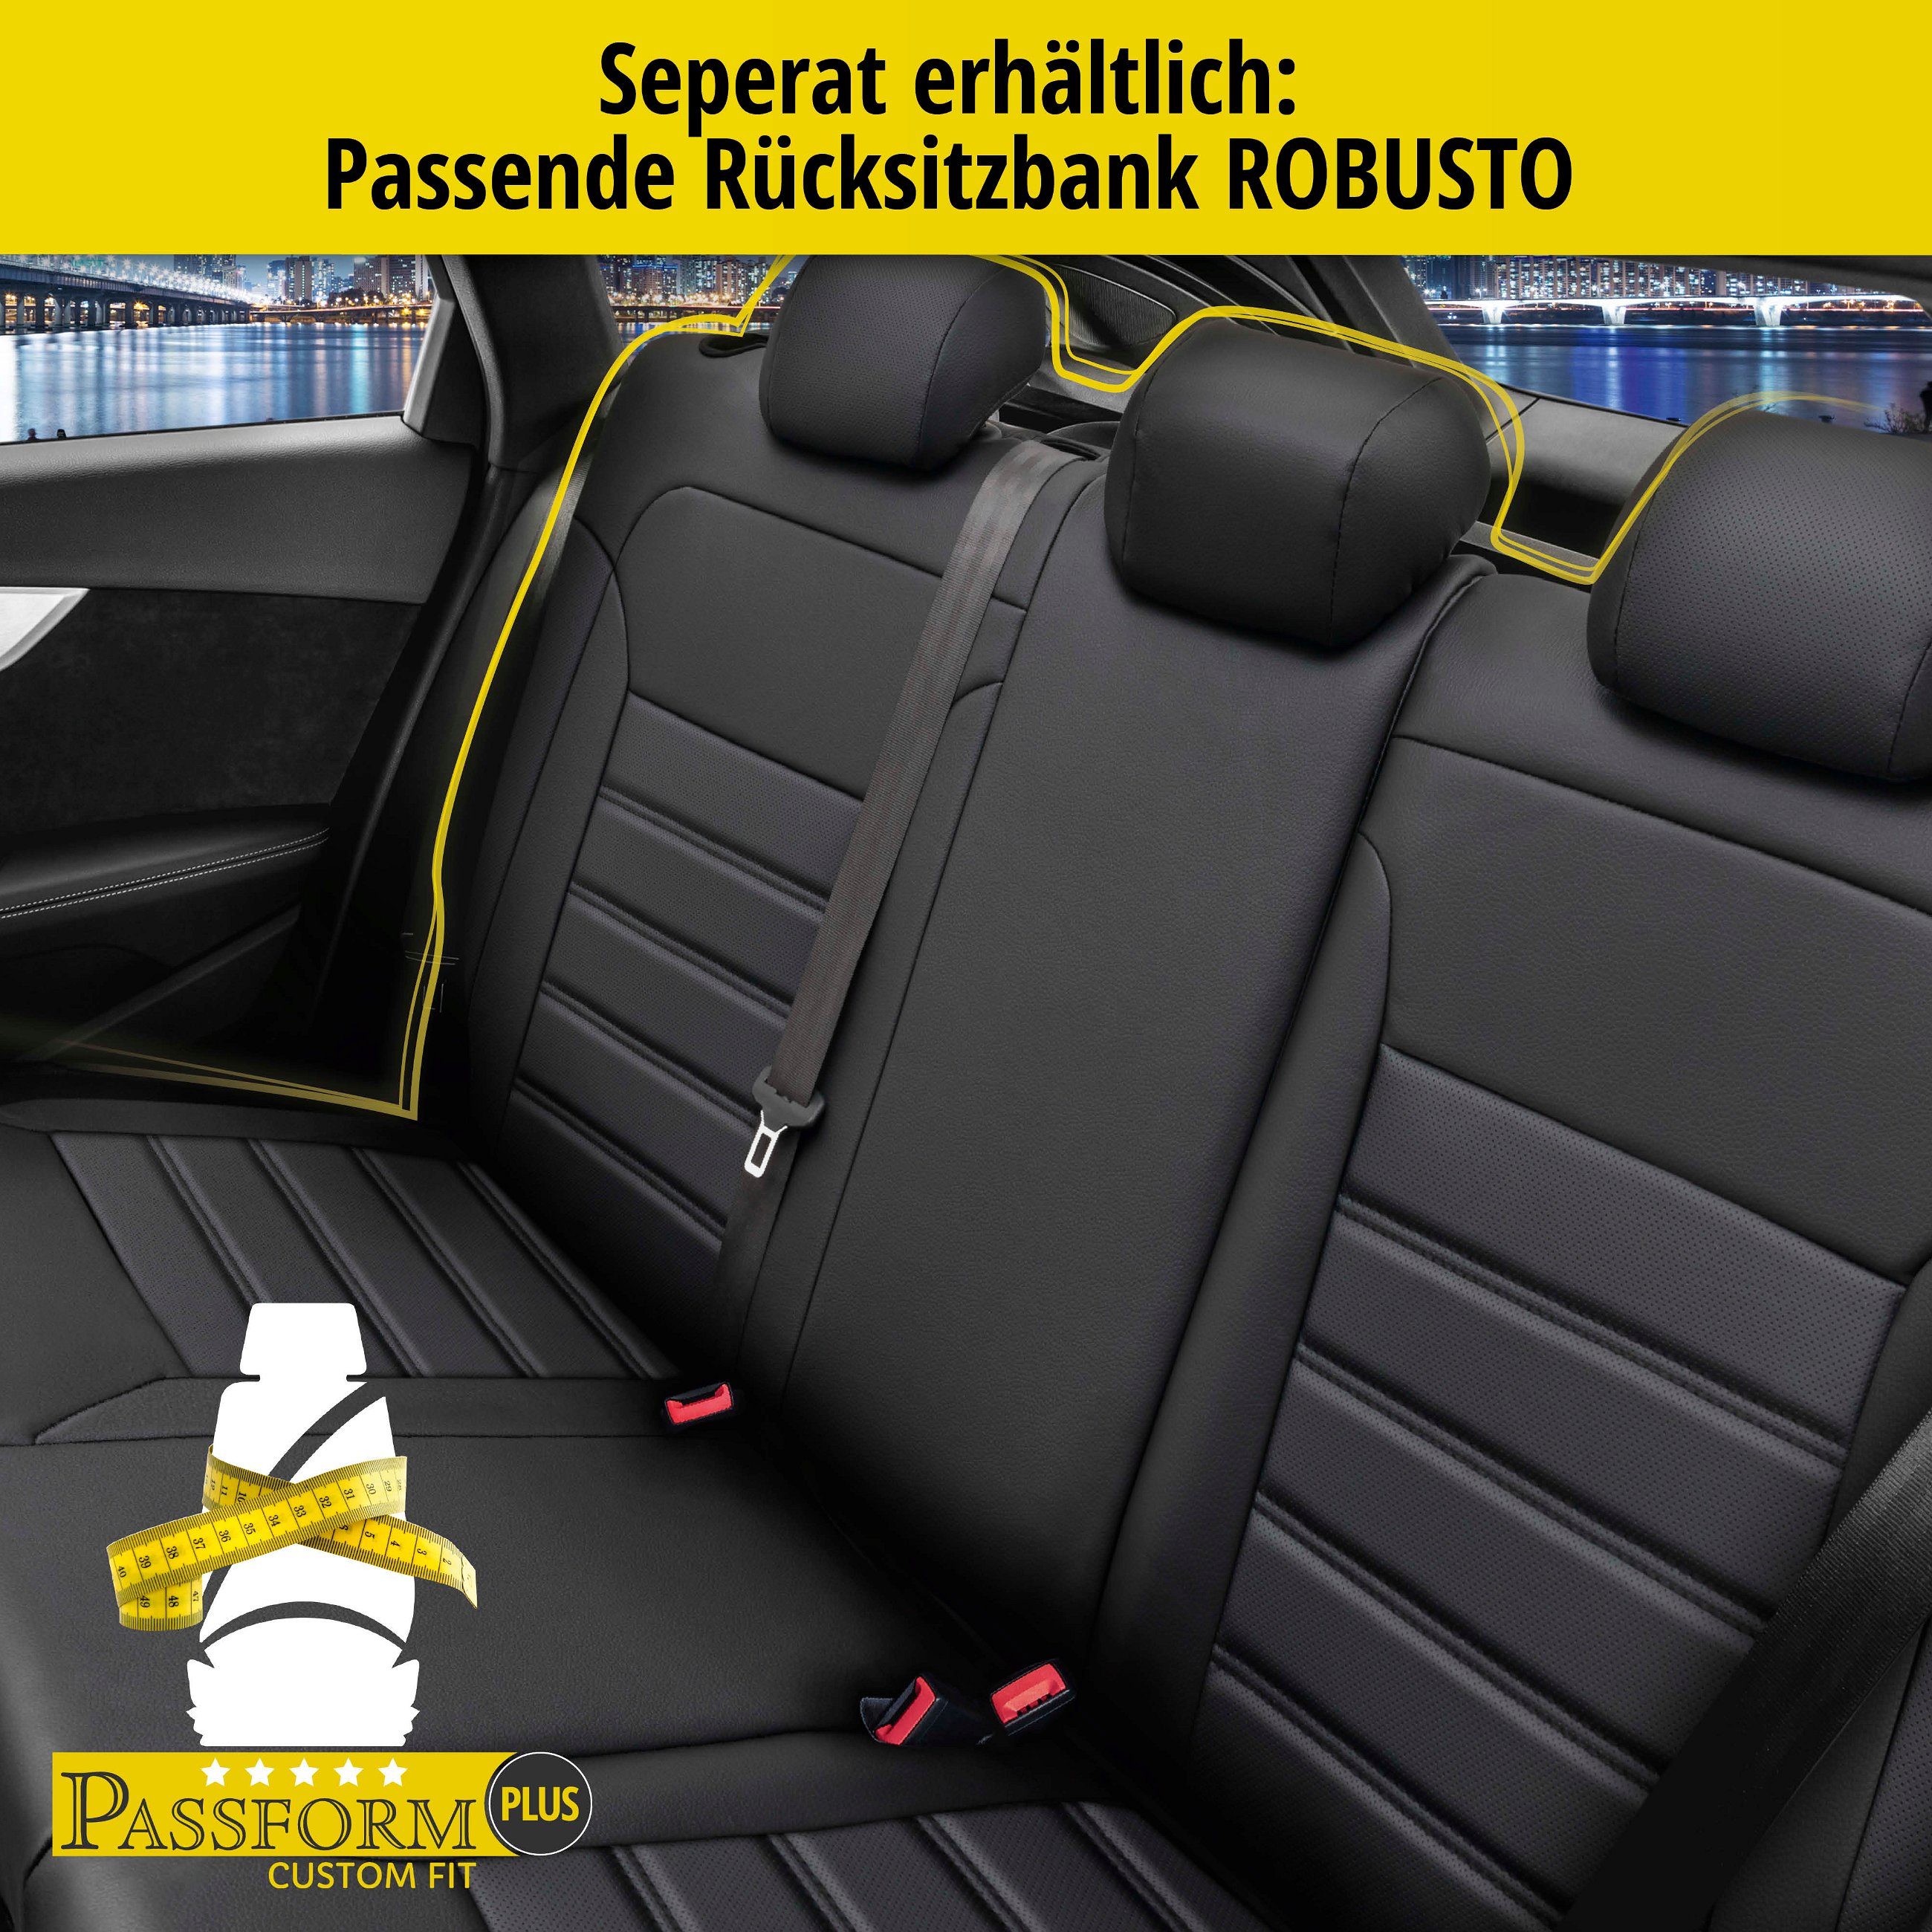 Passform Sitzbezug Robusto für VW Passat Highline ab Facelift 2006-Heute, 2 Einzelsitzbezüge für Normalsitze